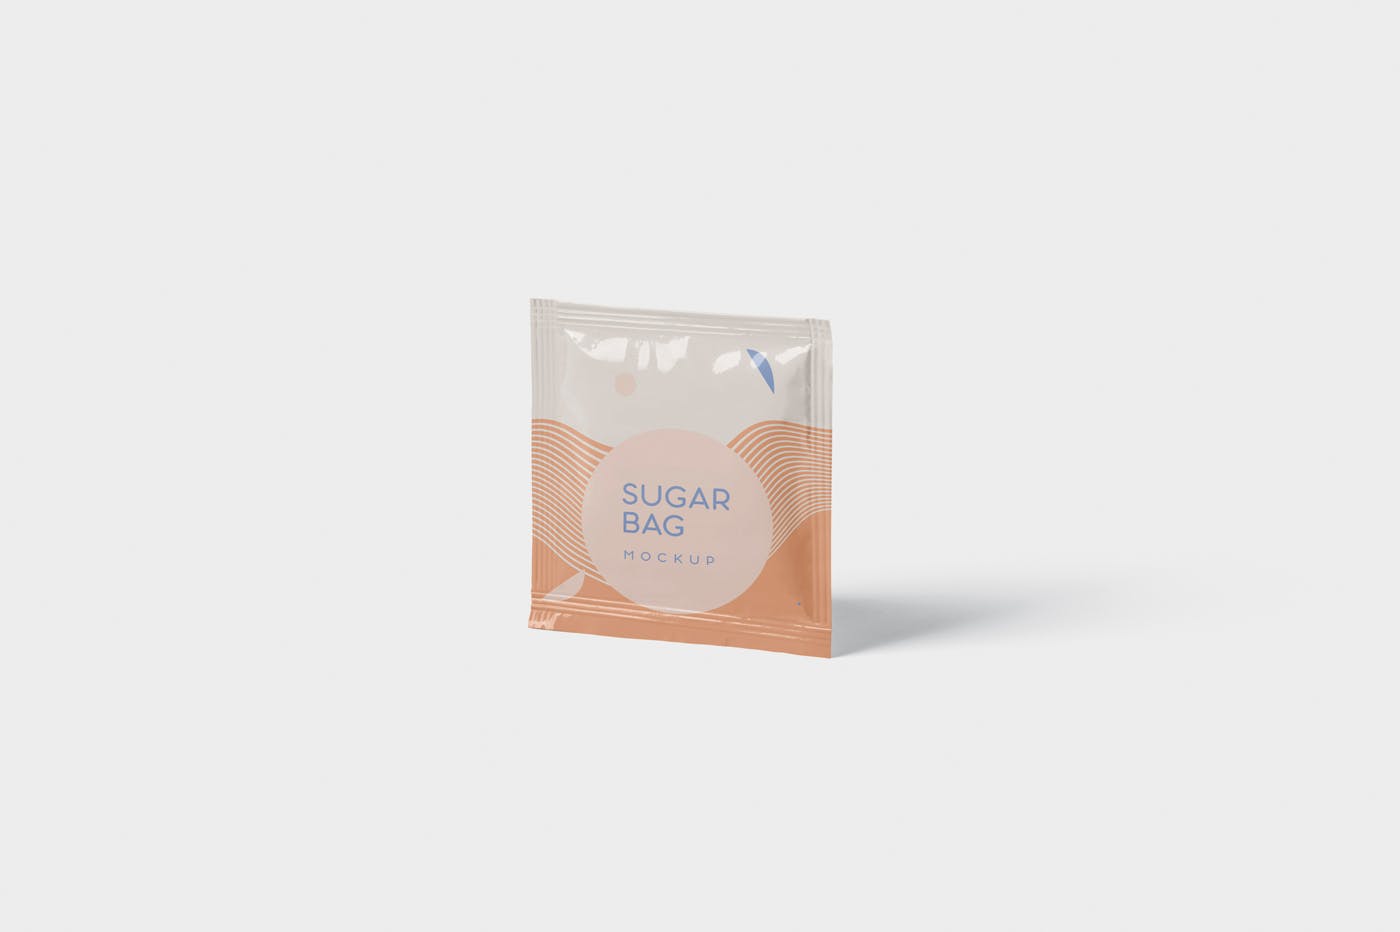 盐袋糖袋包装设计效果图素材库精选 Salt OR Sugar Bag Mockup – Square Shaped插图(2)